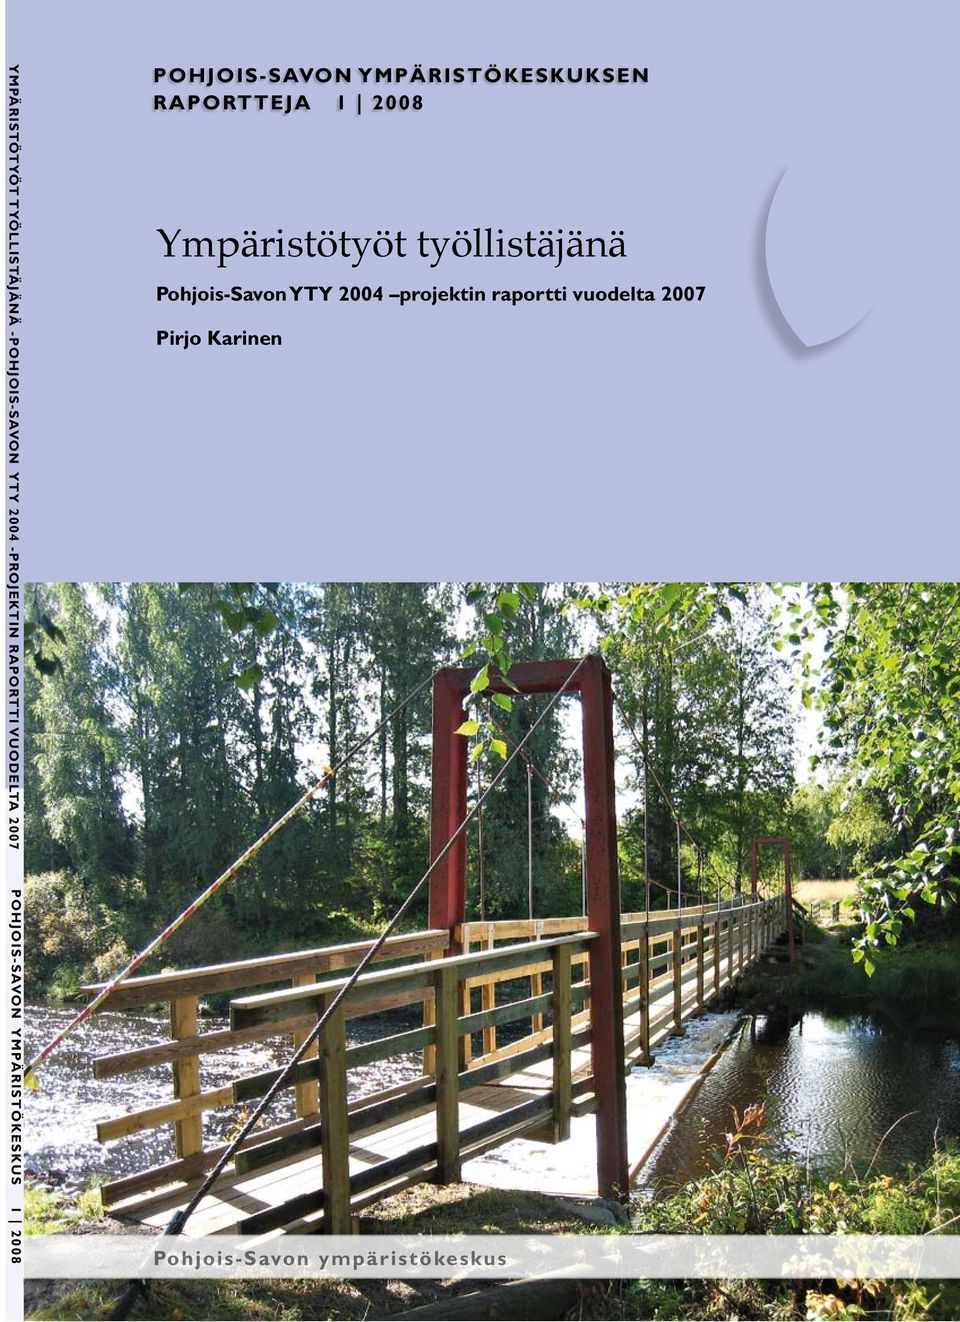 työllistäjänä Pohjois-Savon YTY 2004 projektin raportti vuodelta 2007 Pirjo